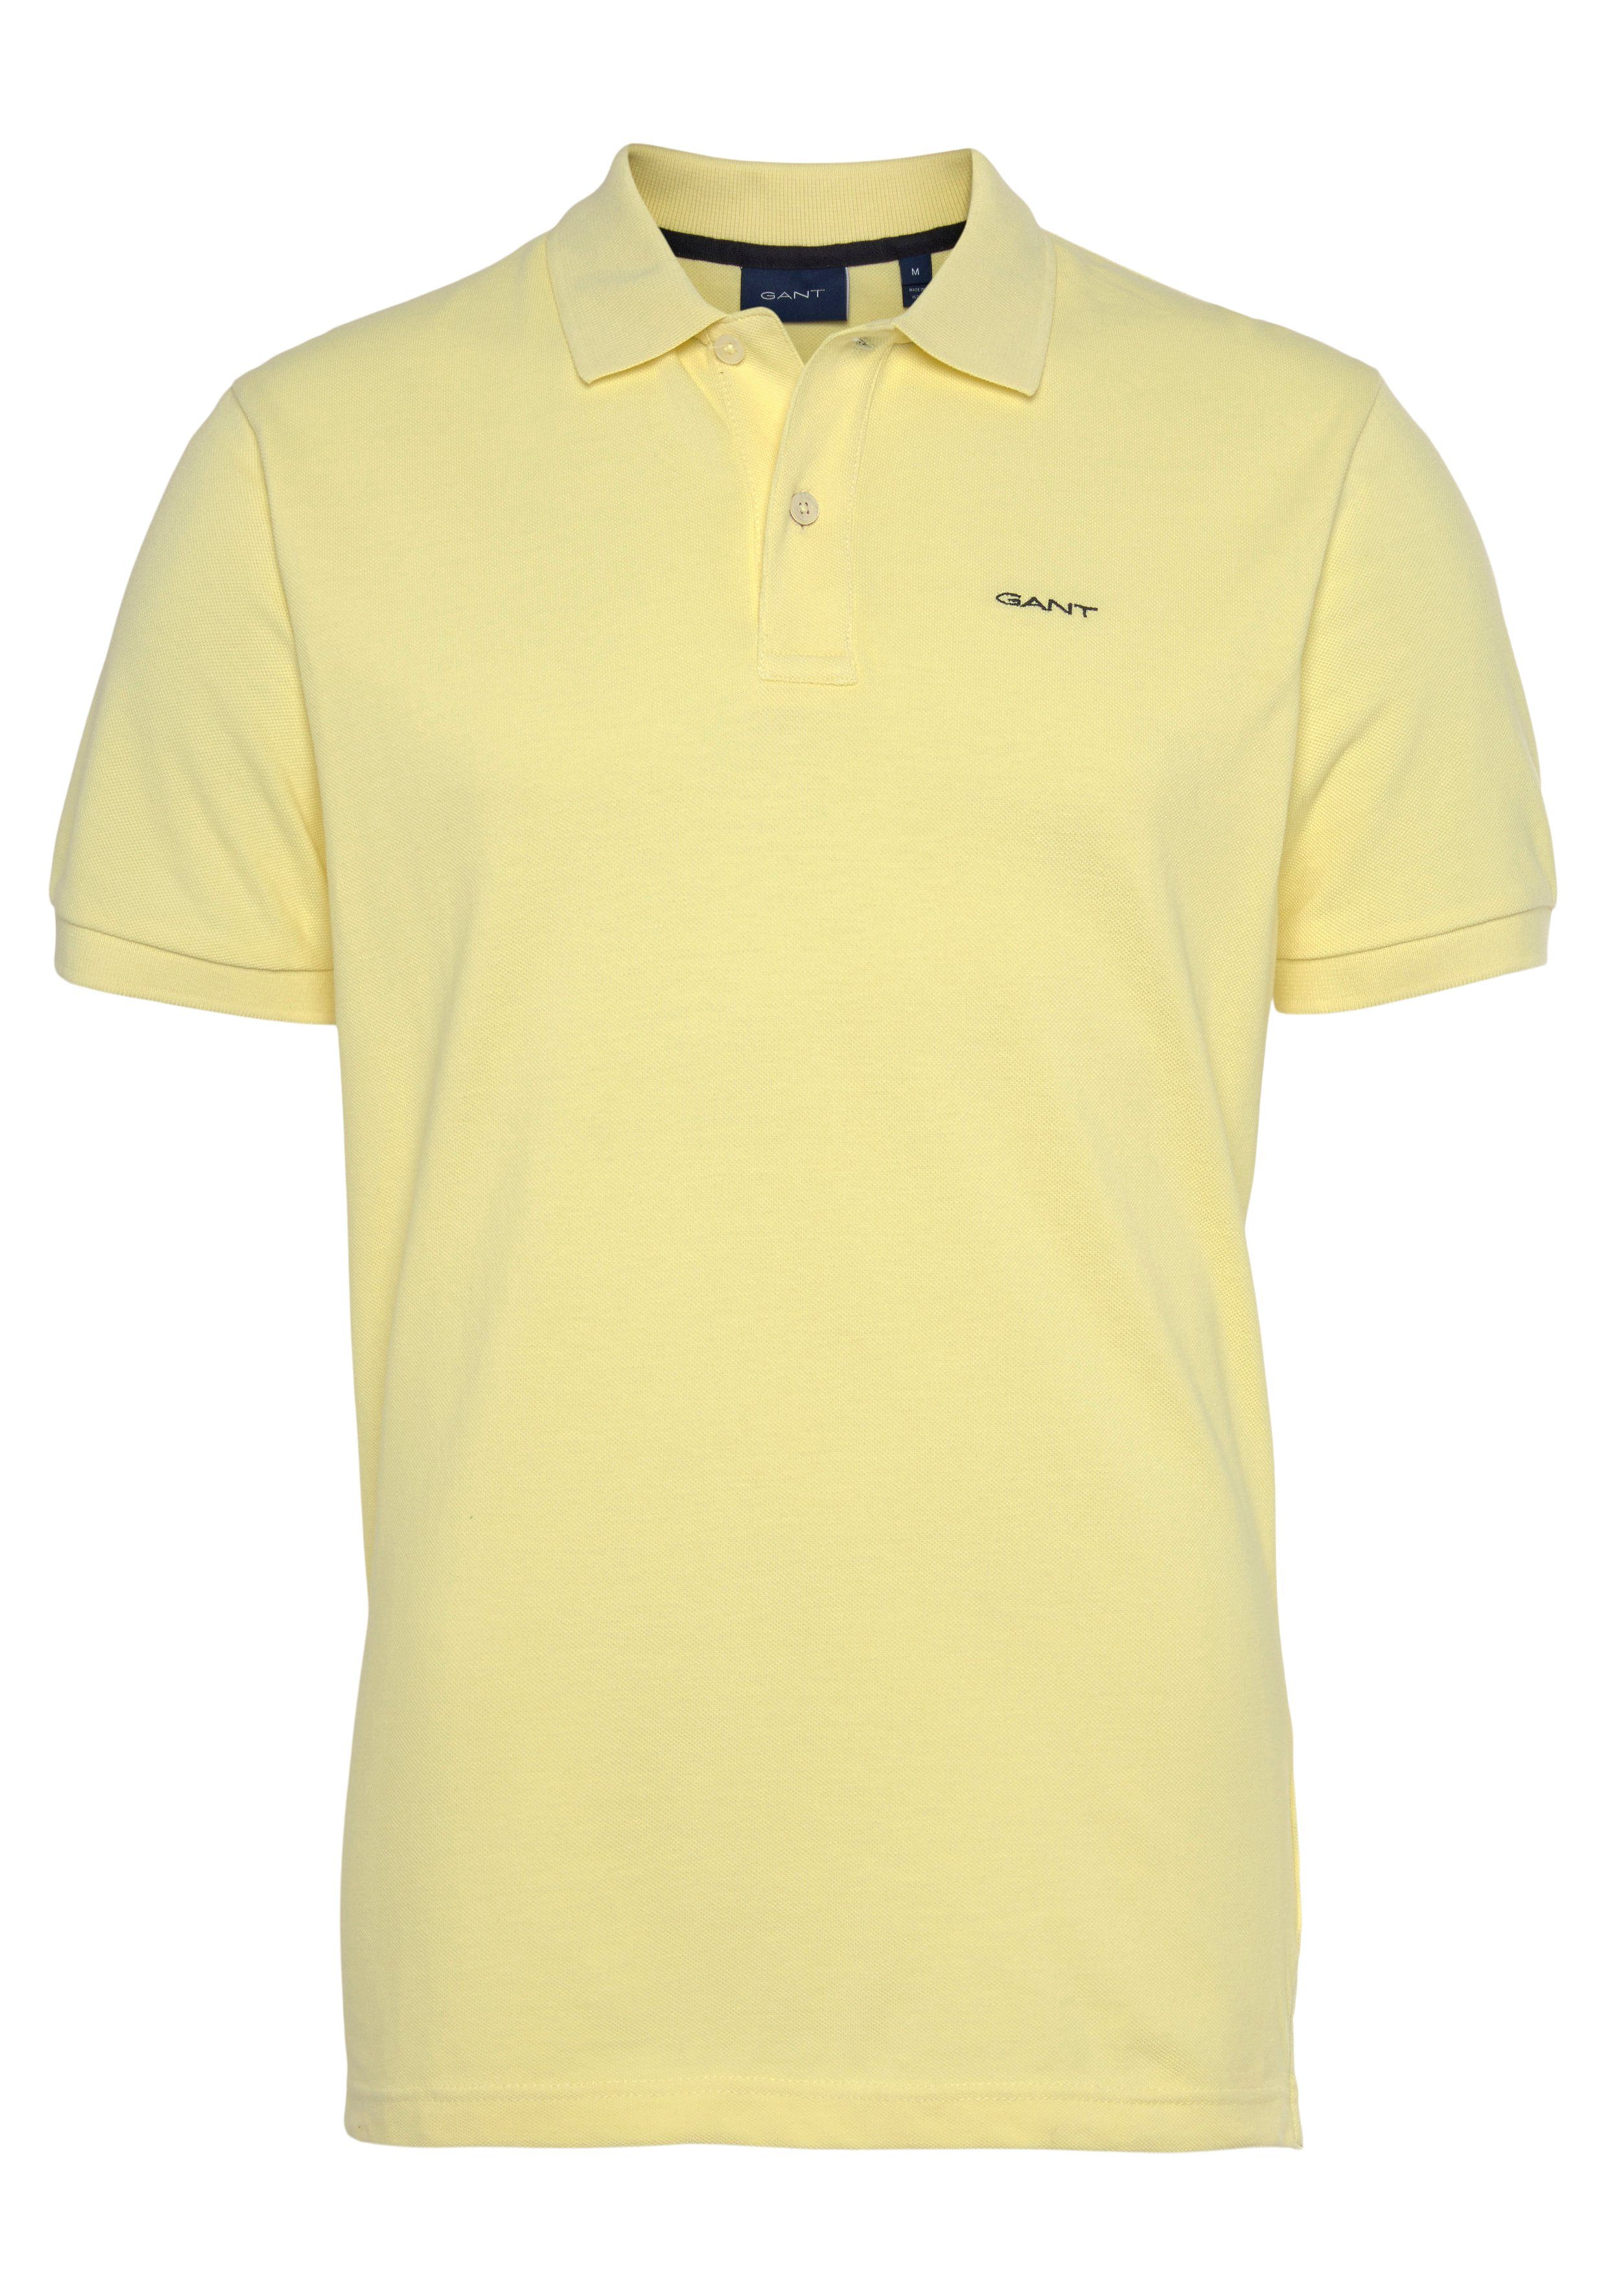 Gant Poloshirt MD. KA Casual, Regular Qualität Fit, Smart Shirt, Premium lem.yellow PIQUE RUGGER Piqué-Polo